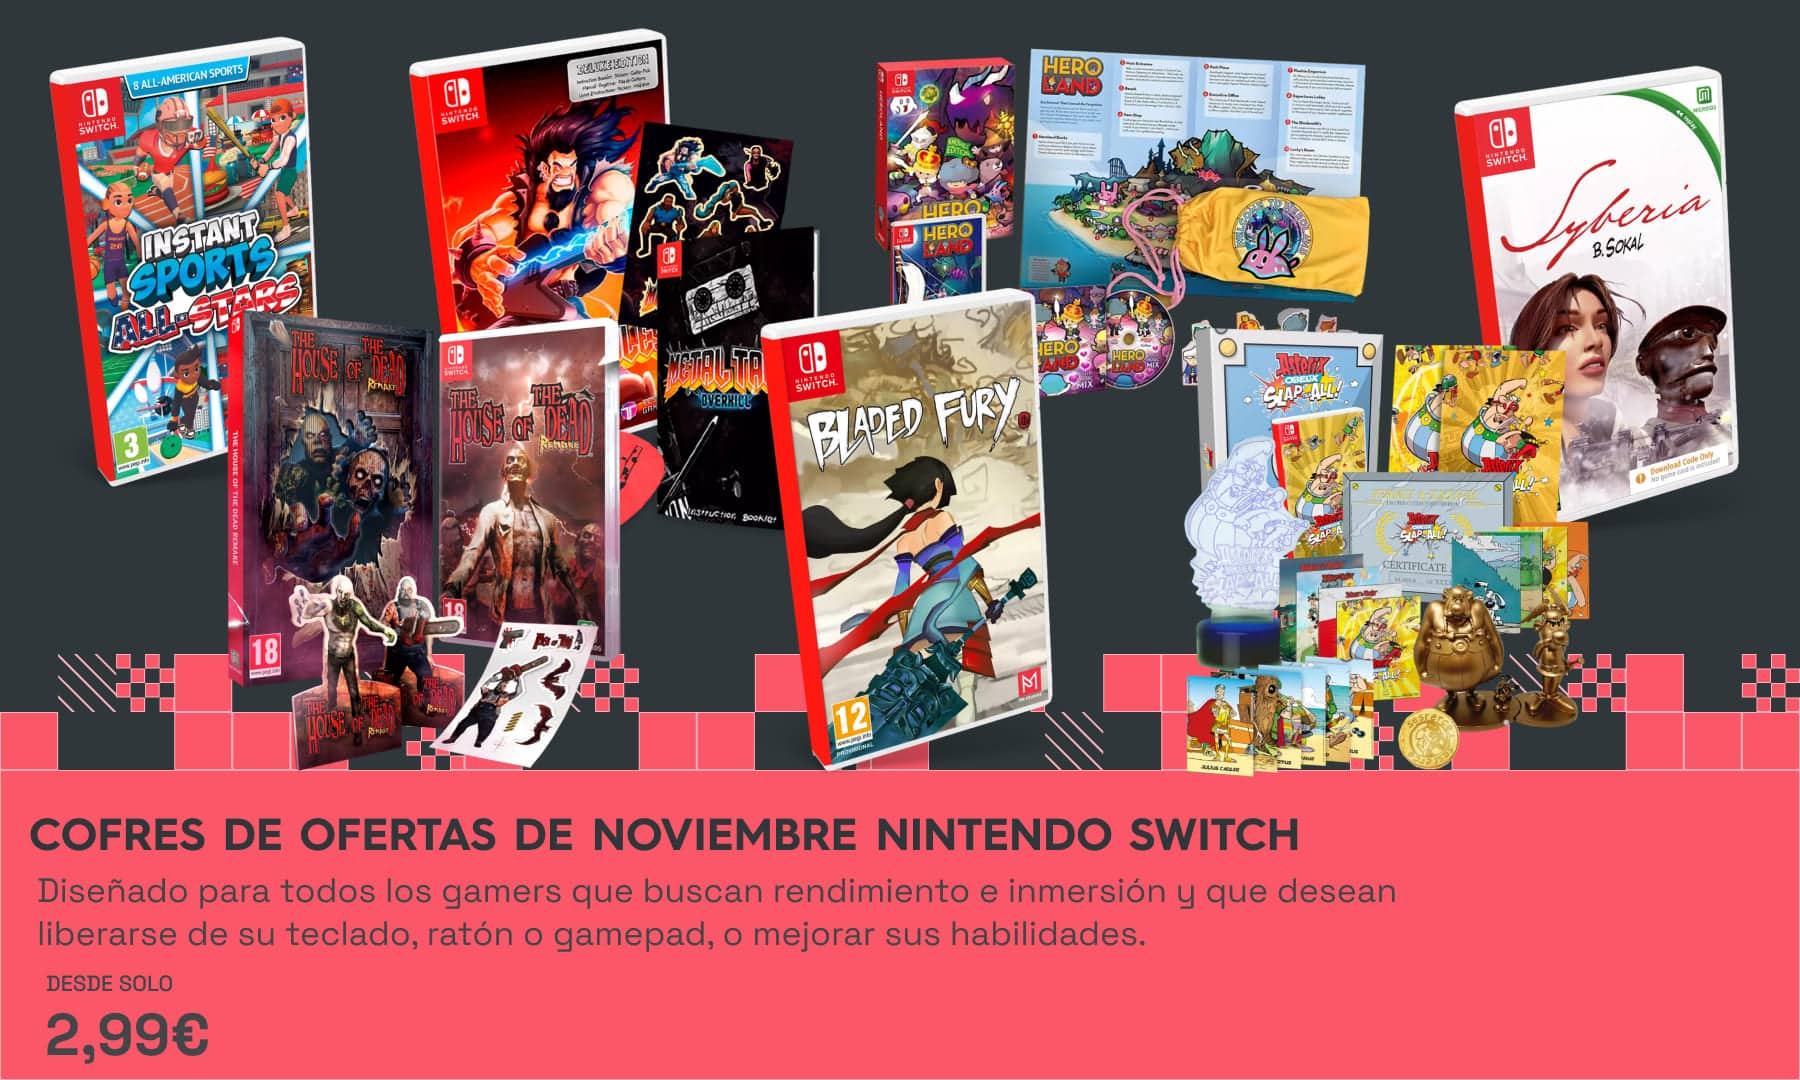 Llegan los Cofres de Ofertas de noviembre de juegos de Nintendo Switch en xtralife